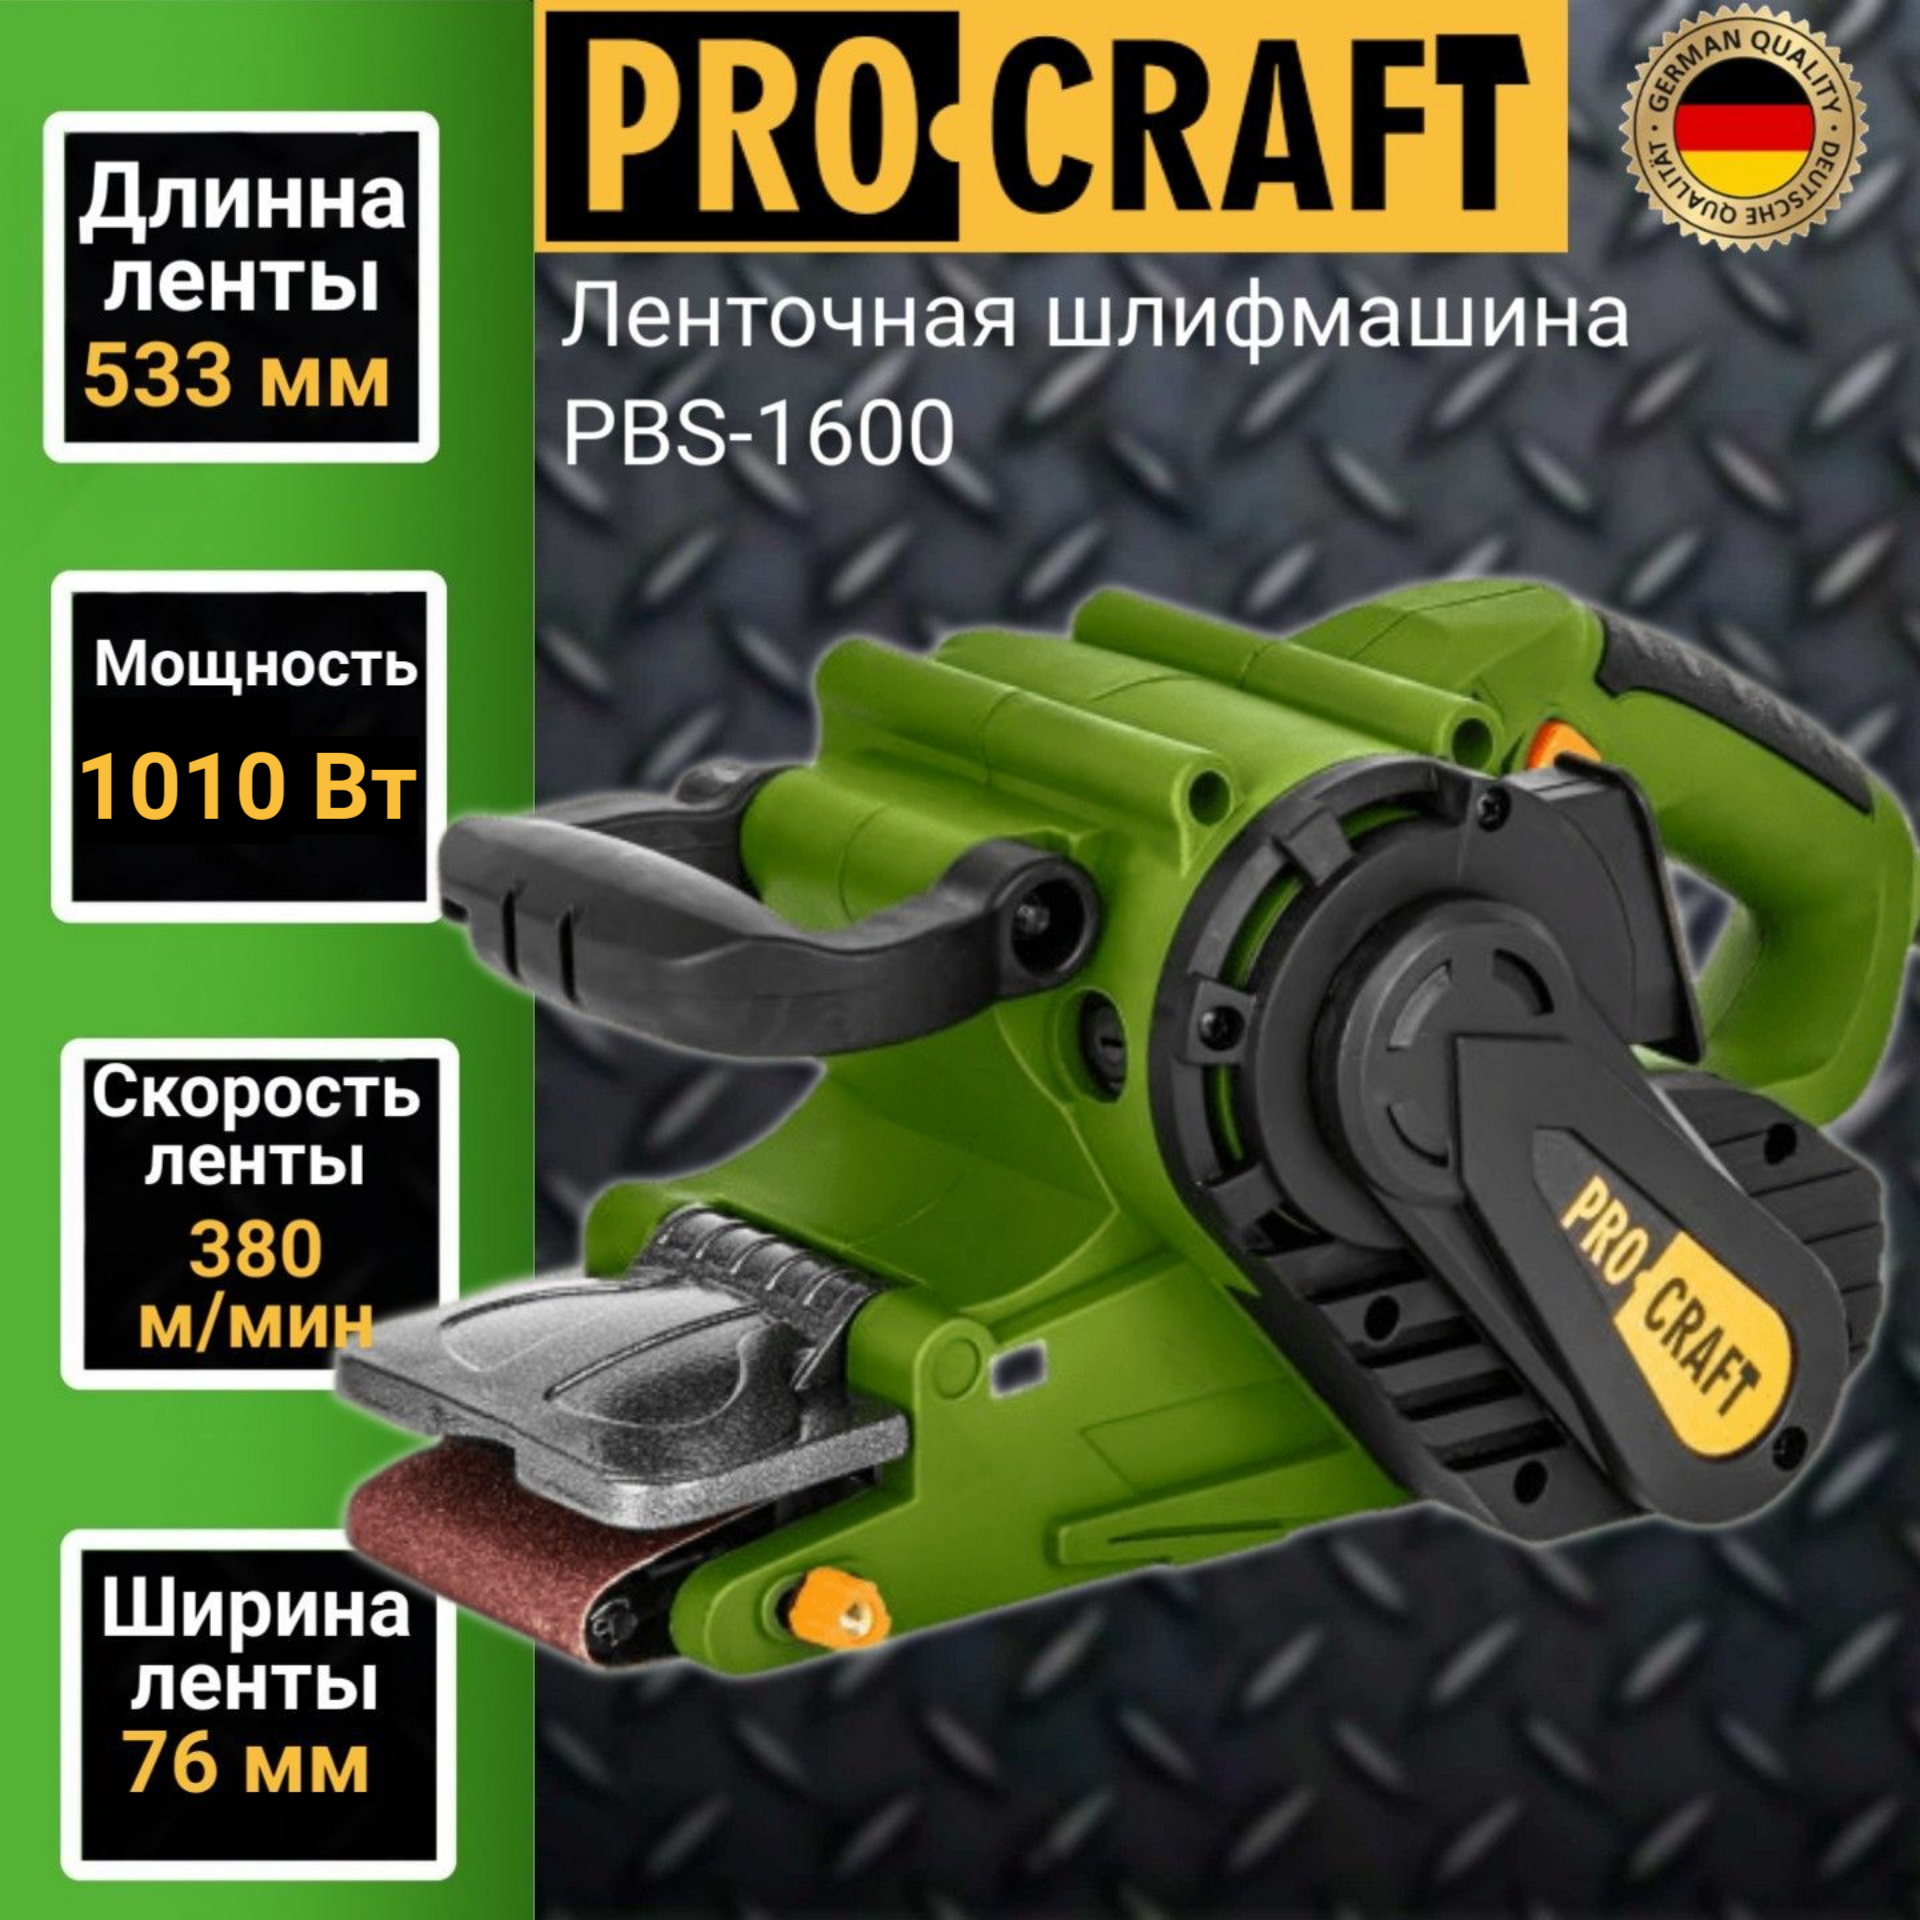 Ленточная шлифовальная машина Procraft PBS-1600, лента 530х76мм, 1010Вт, 380 м/мин швейная машина comfort 1010 зеленый